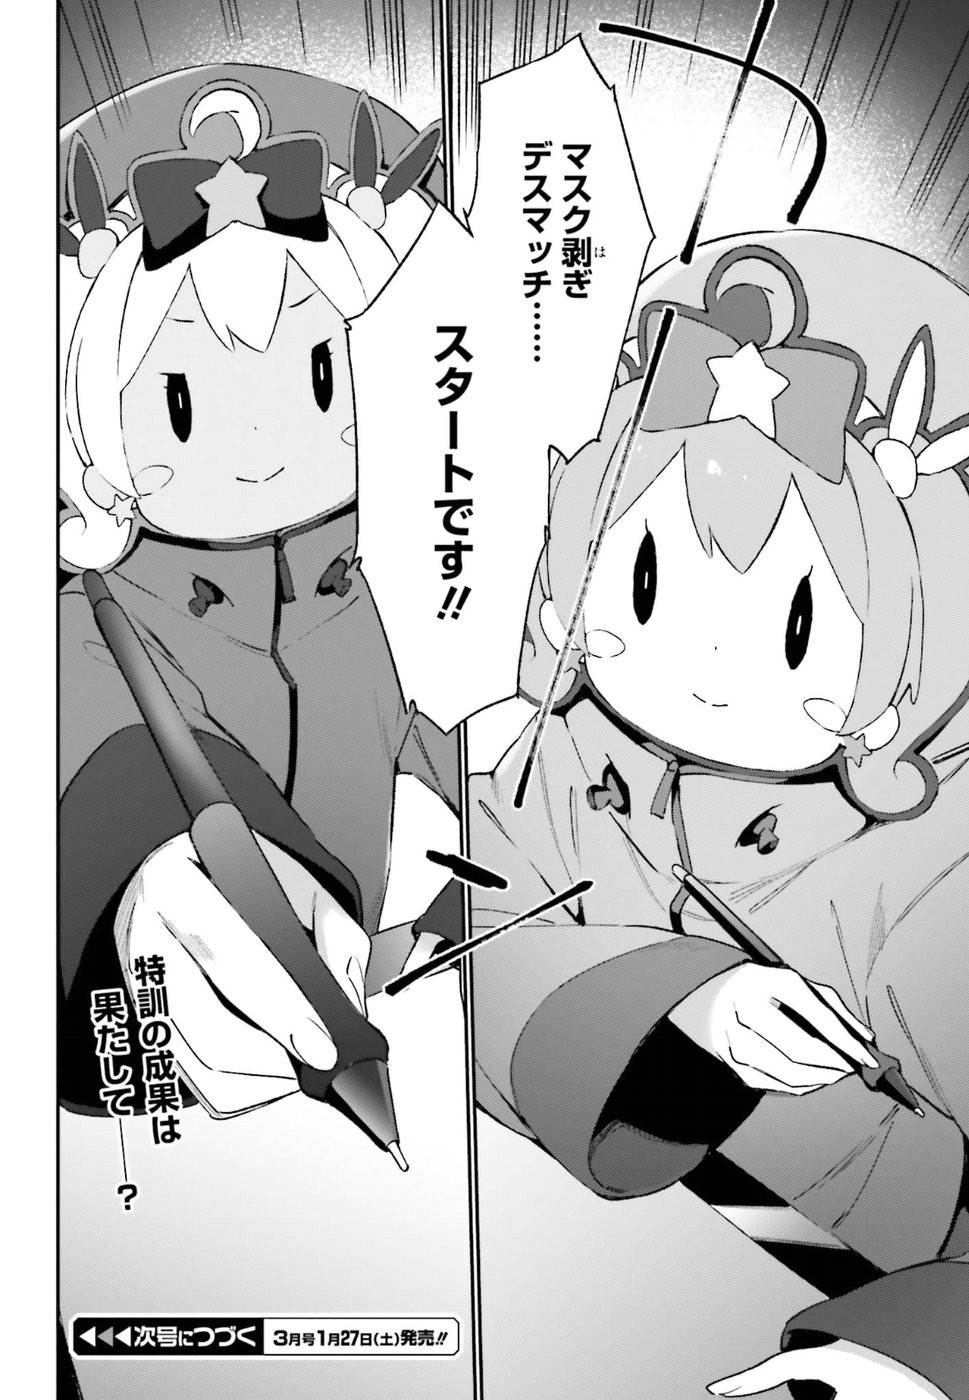 Ero Manga Sensei - Chapter 43 - Page 18